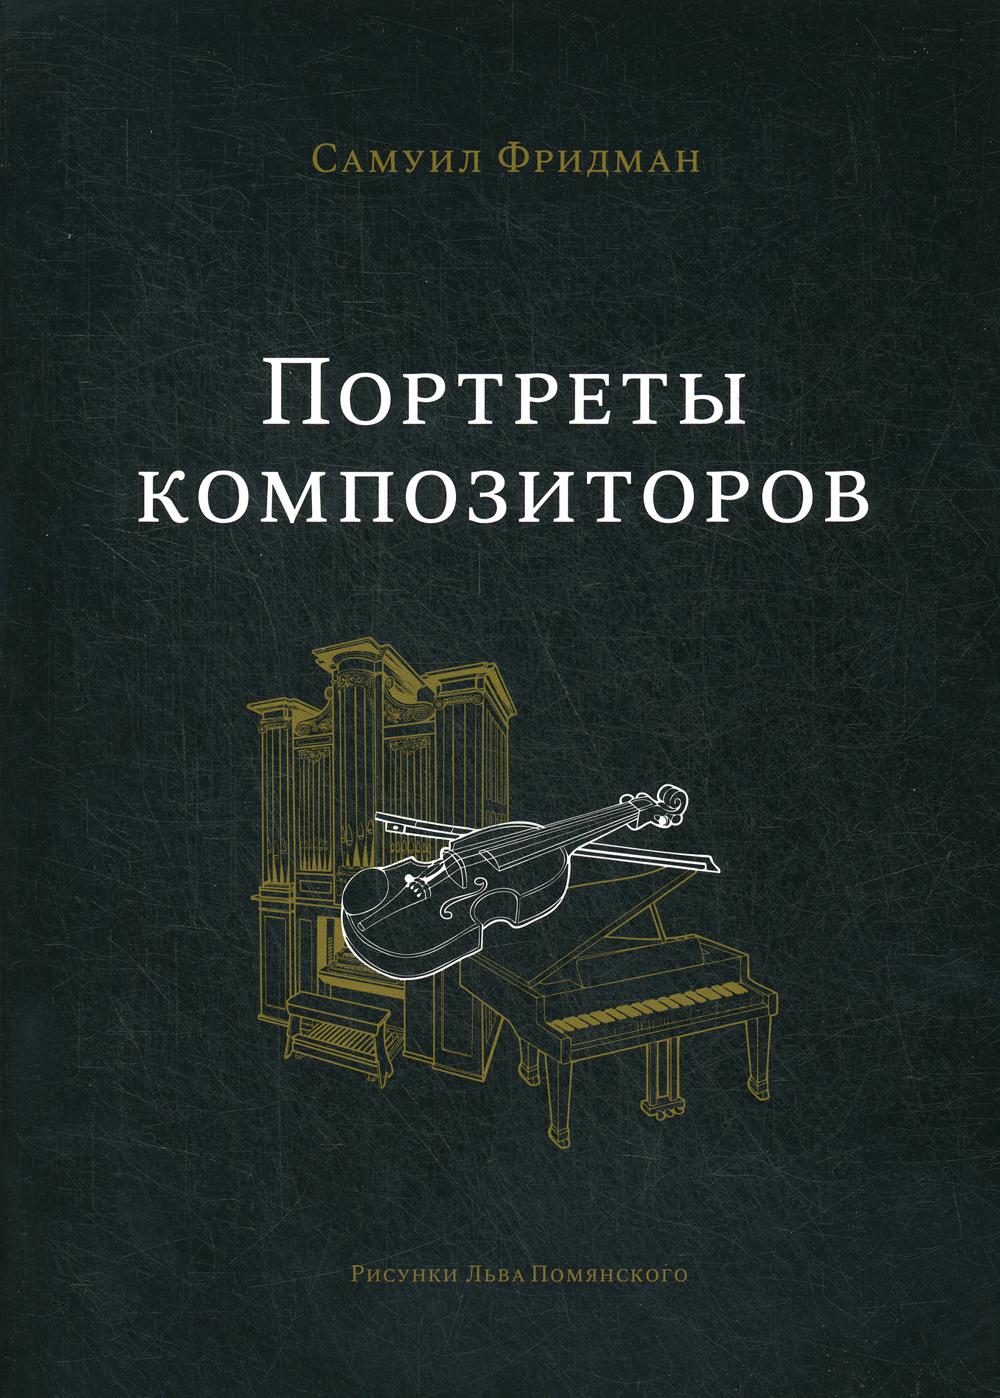 фото Книга портреты композиторов russian chess house